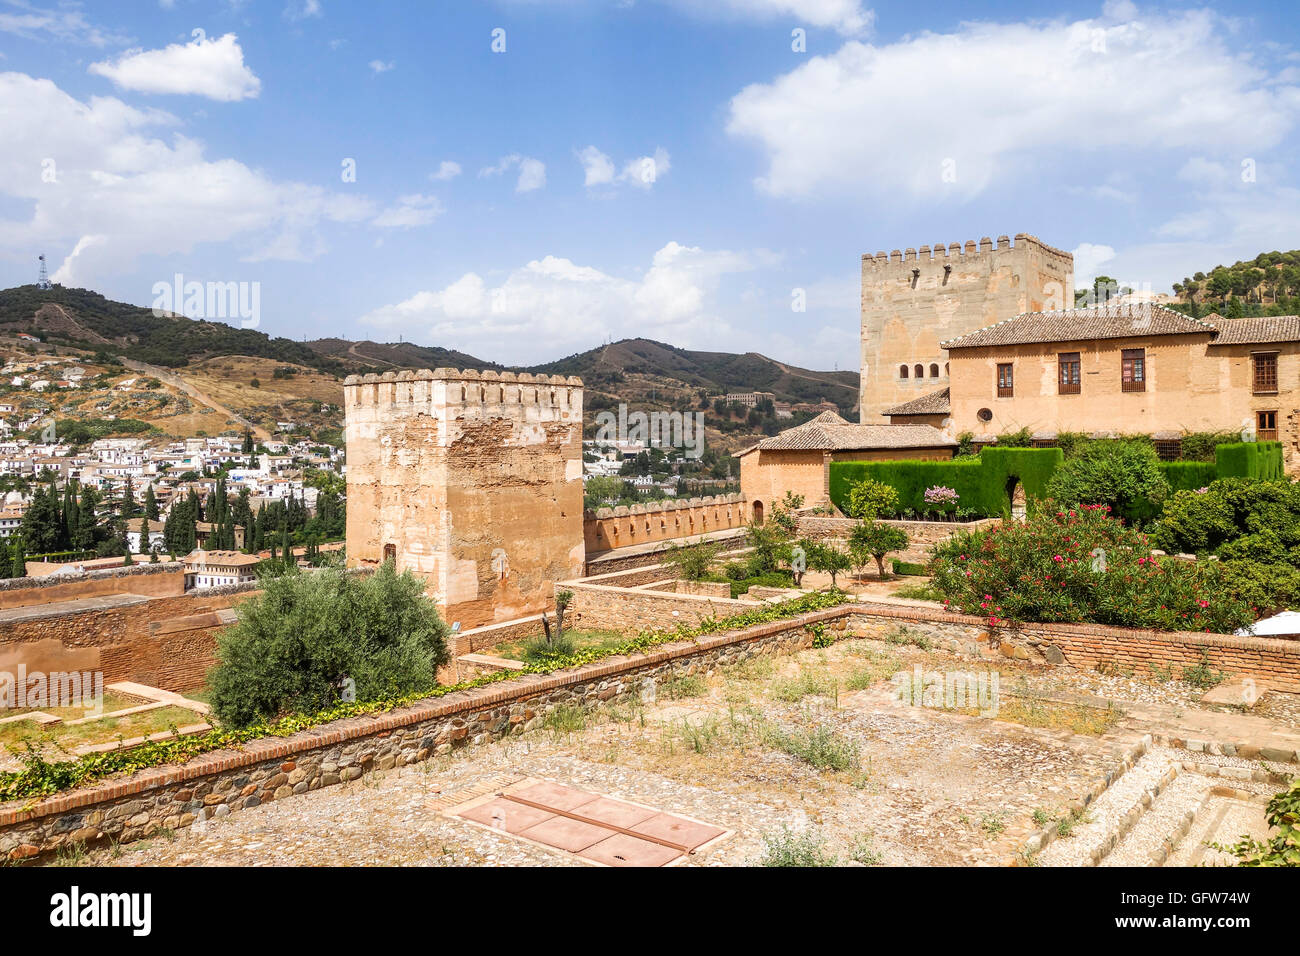 La forteresse Alcazaba de l'Alhambra, montrant la 'Armas' square, l'Alhambra de Grenade, Andalousie, espagne. Banque D'Images